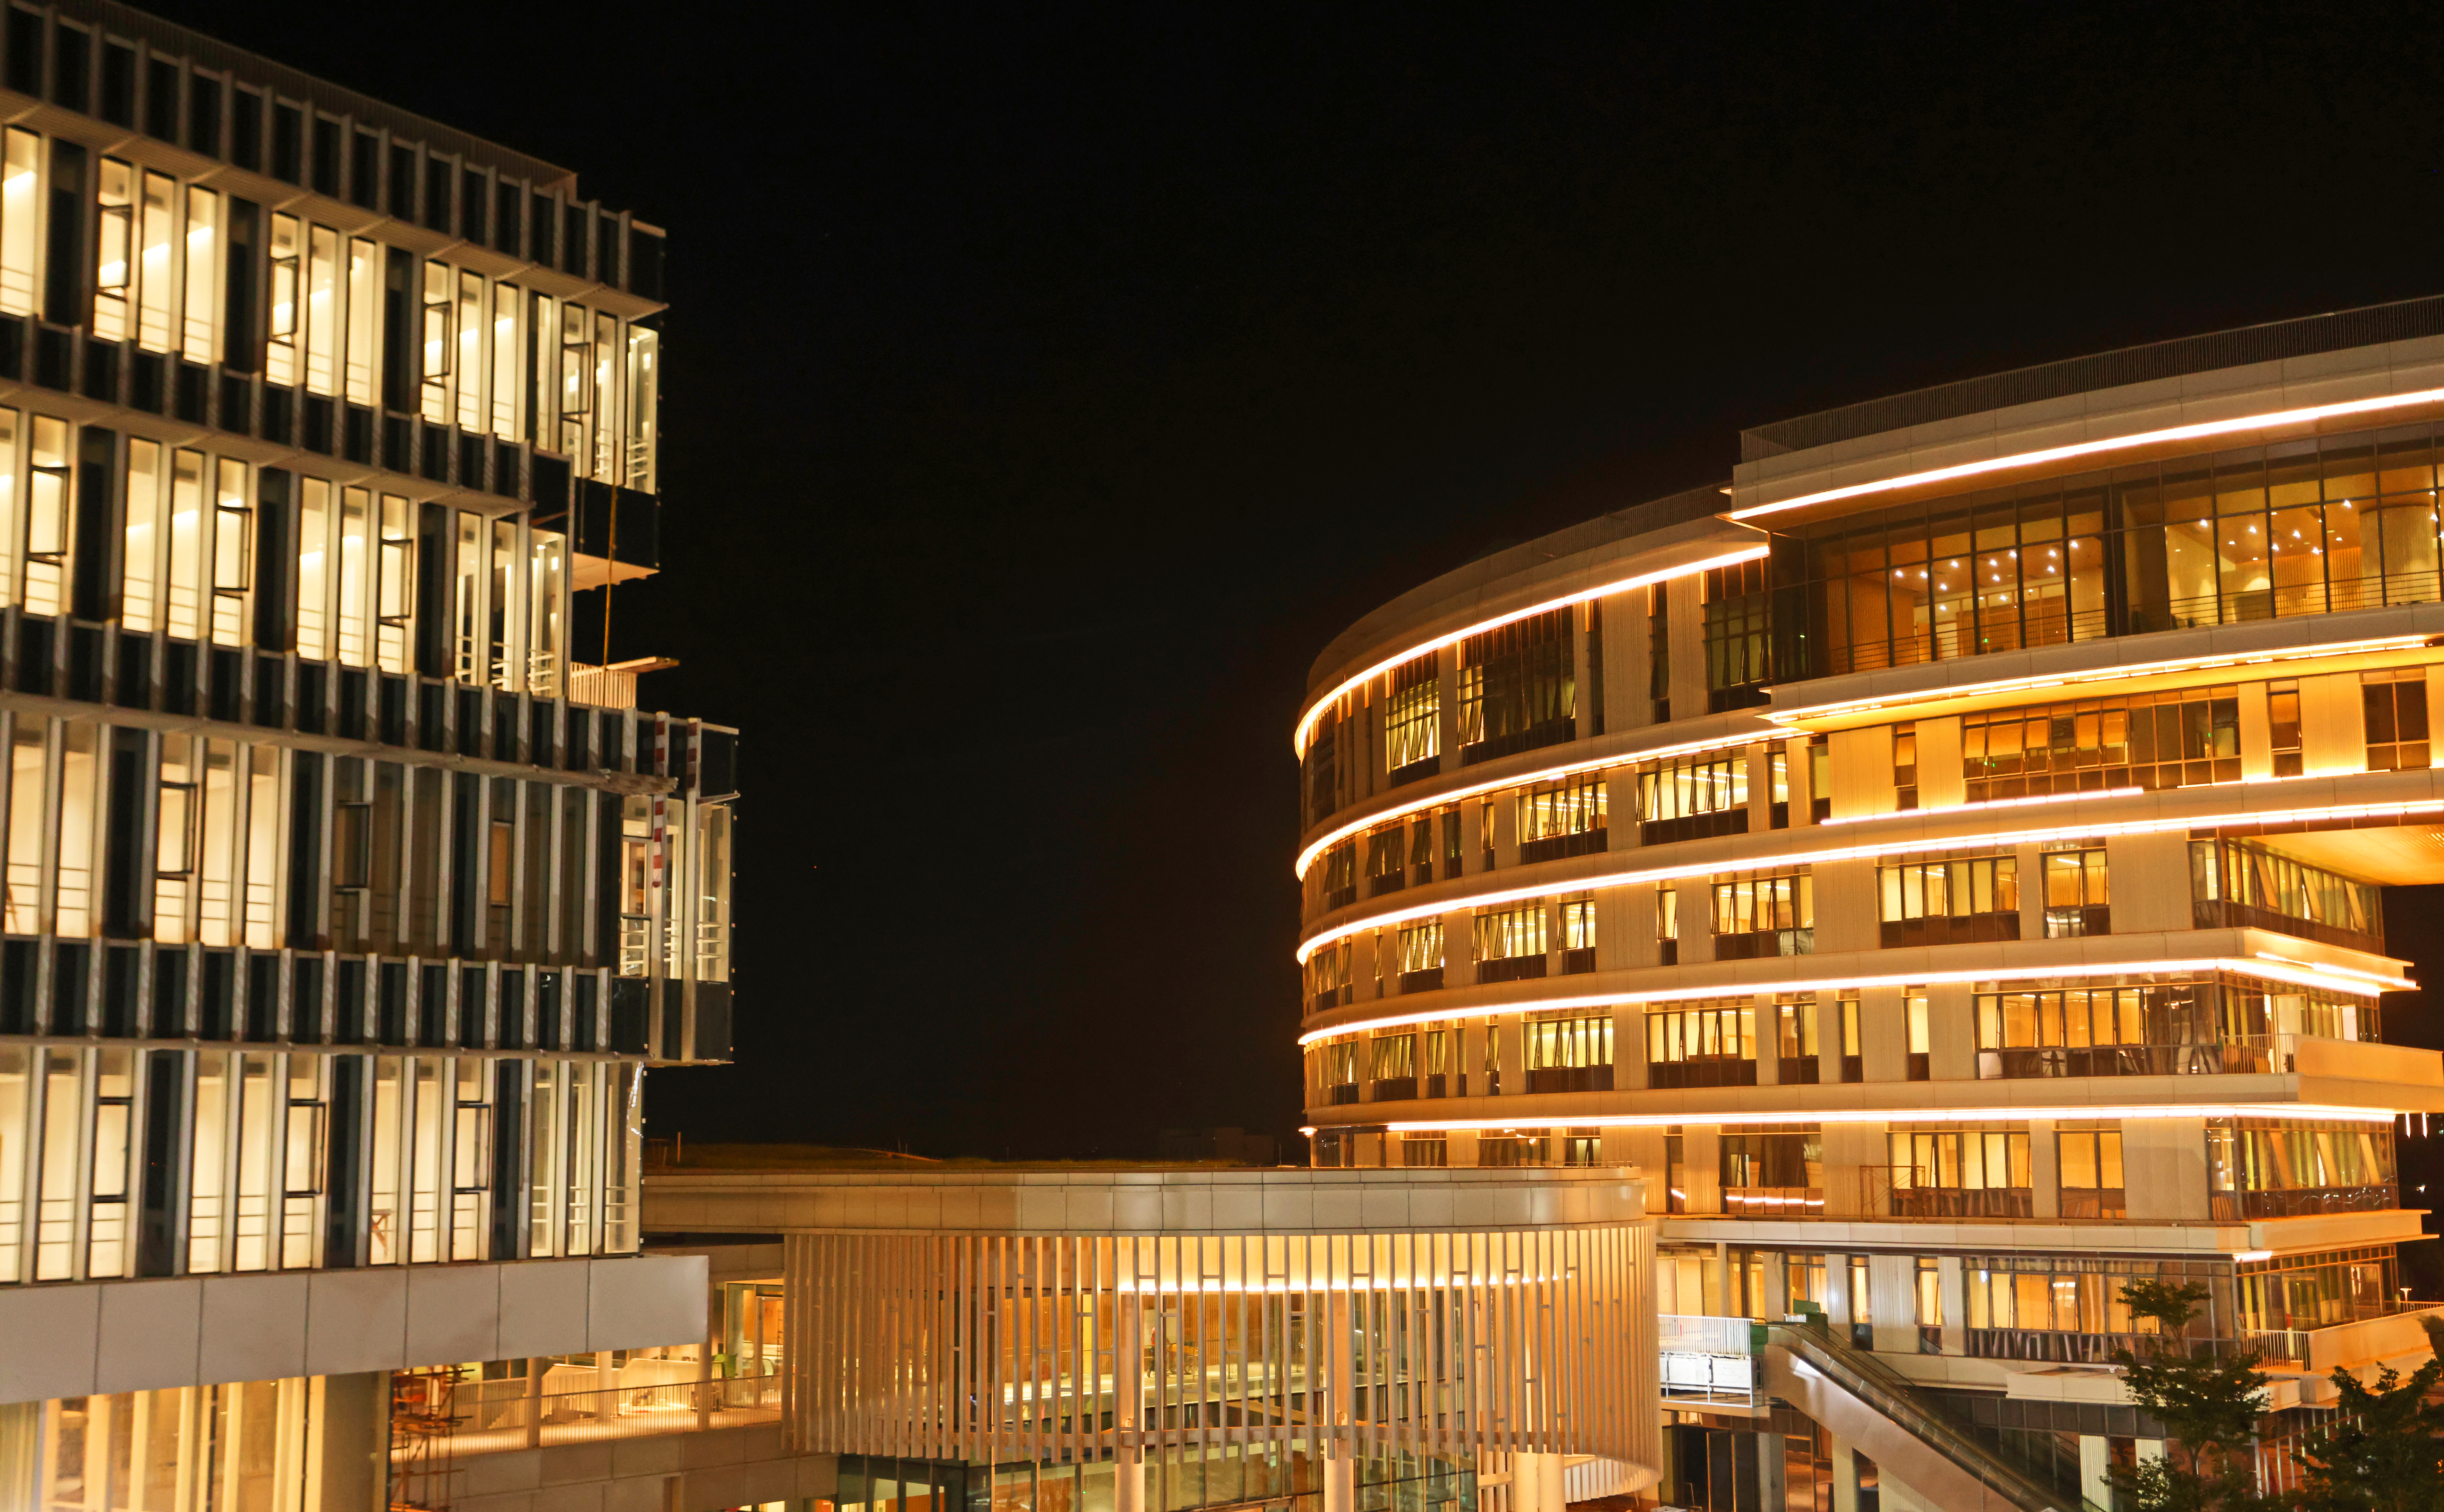 港科大（广州）核心区楼群夜景。图中建筑为学生活动中心及行政楼。